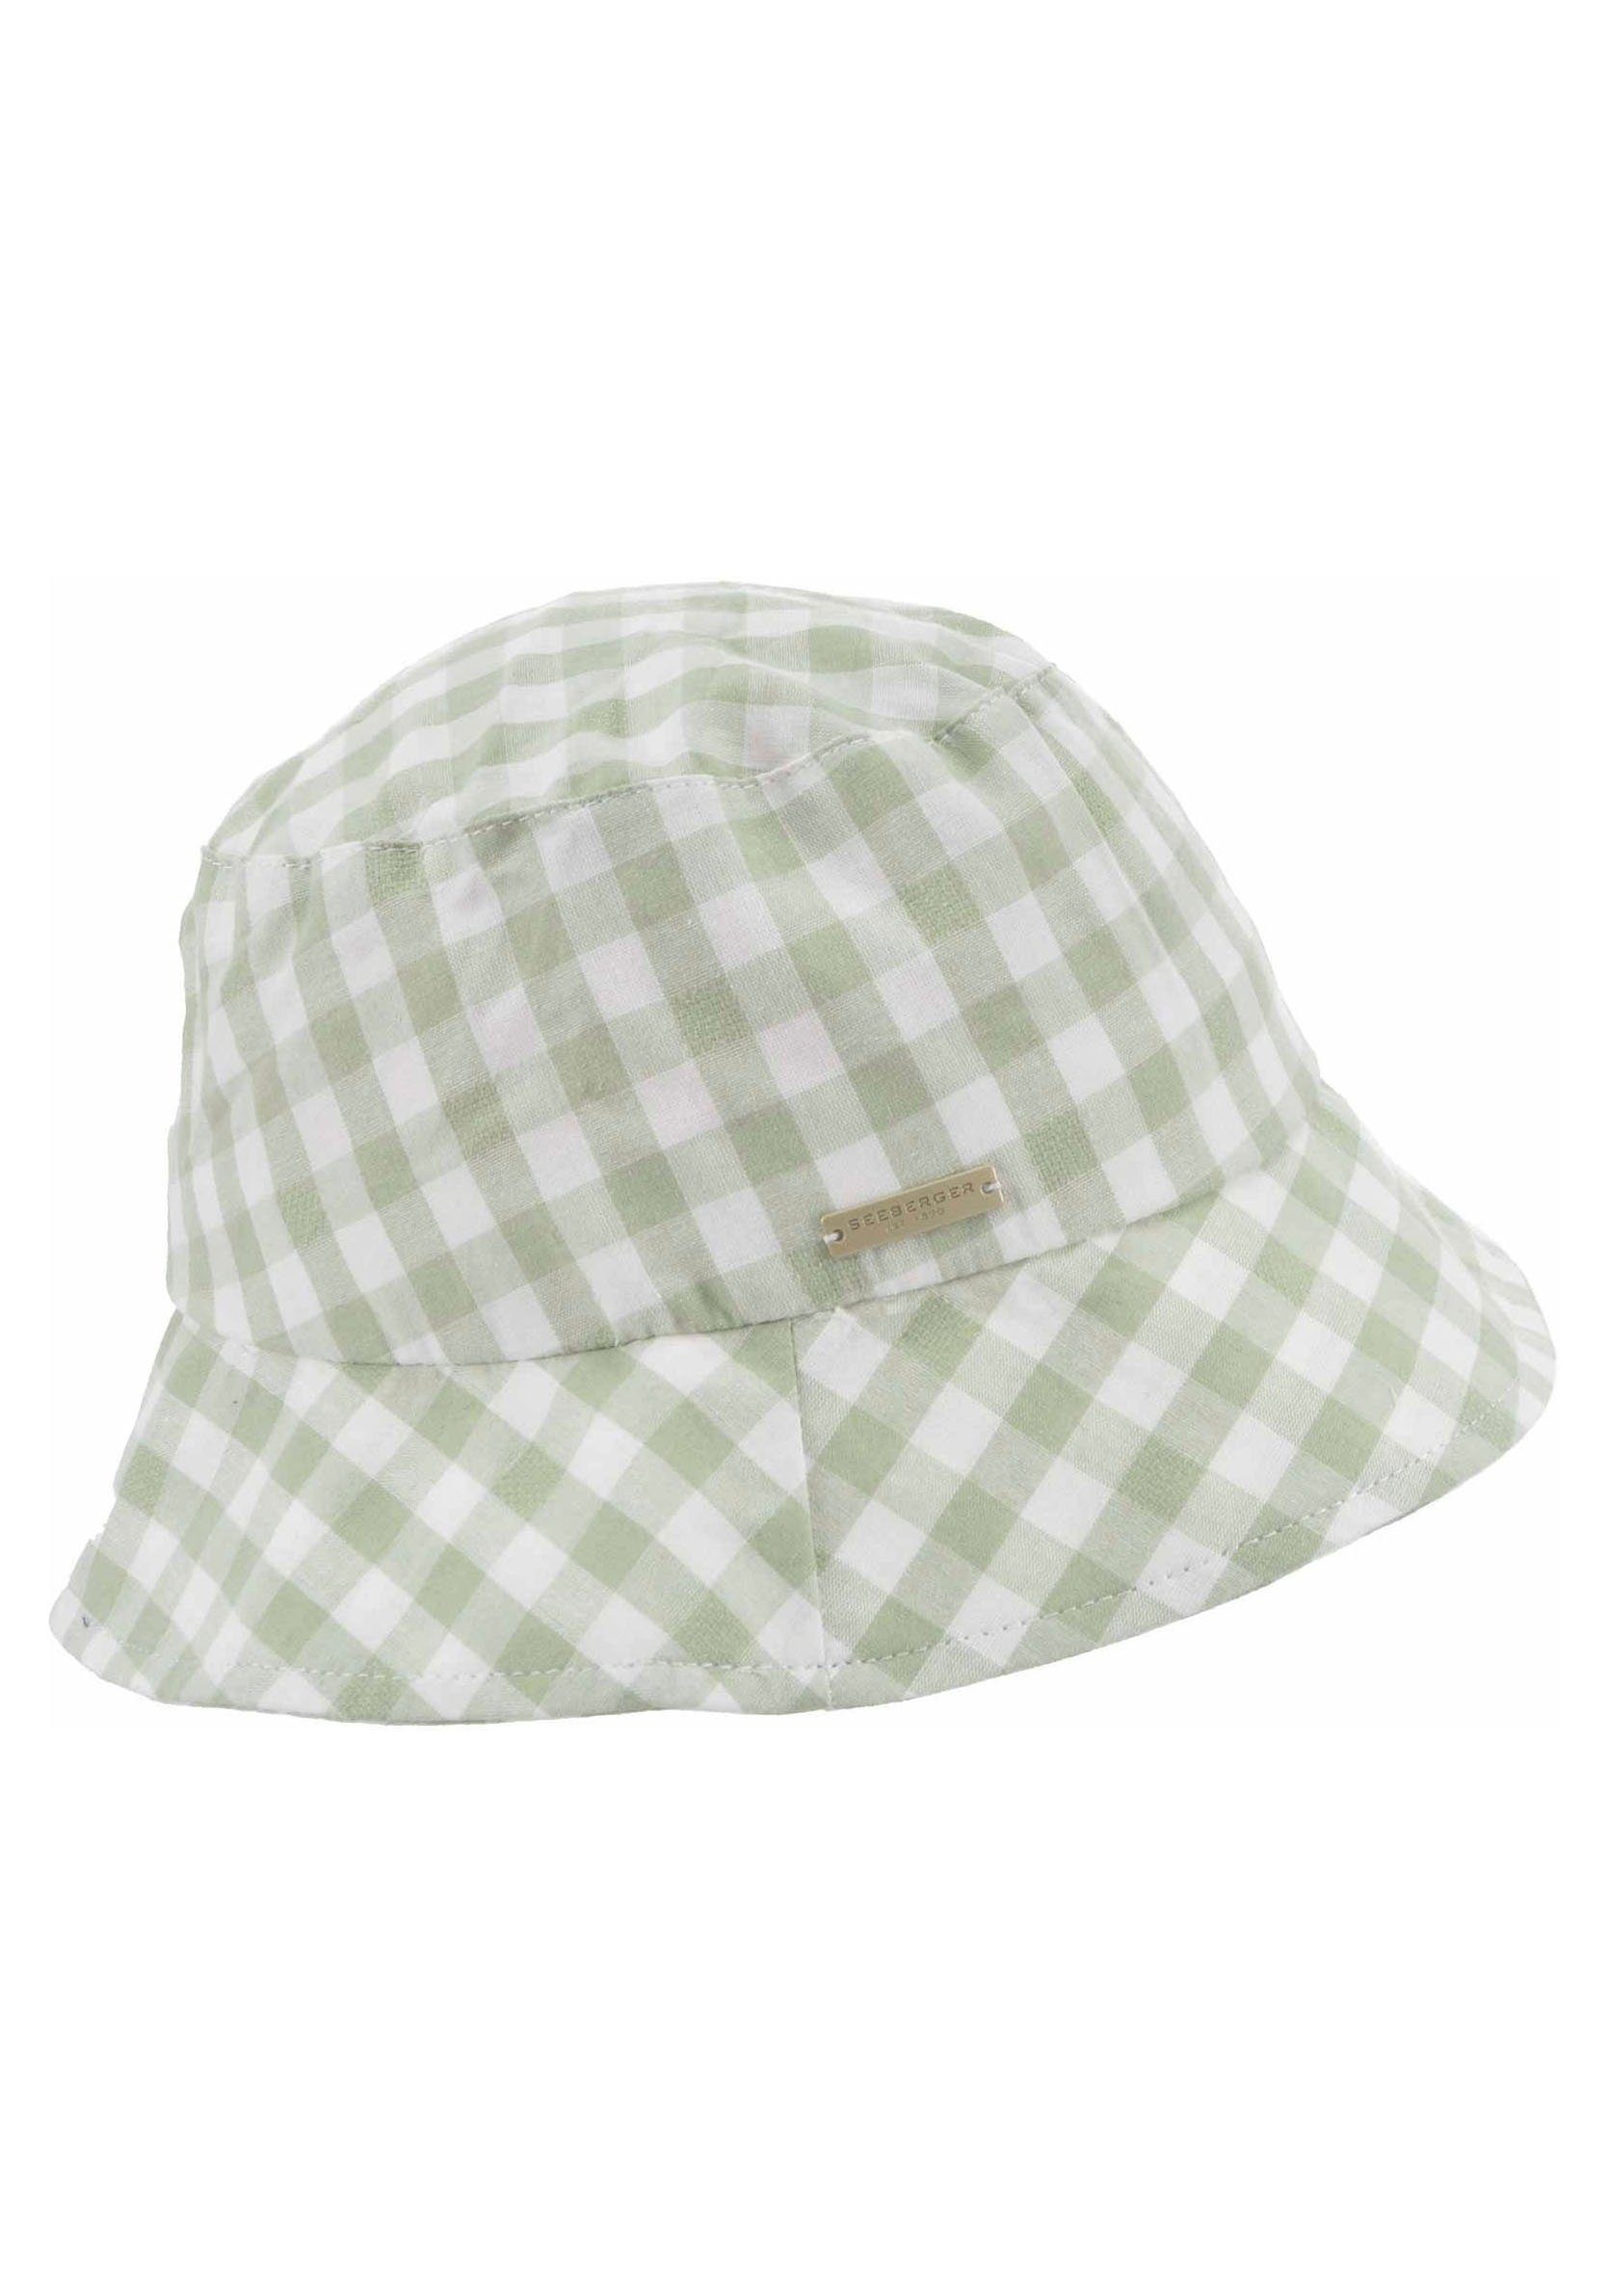 Seeberger Fischerhut Bucket Hat grün weiß